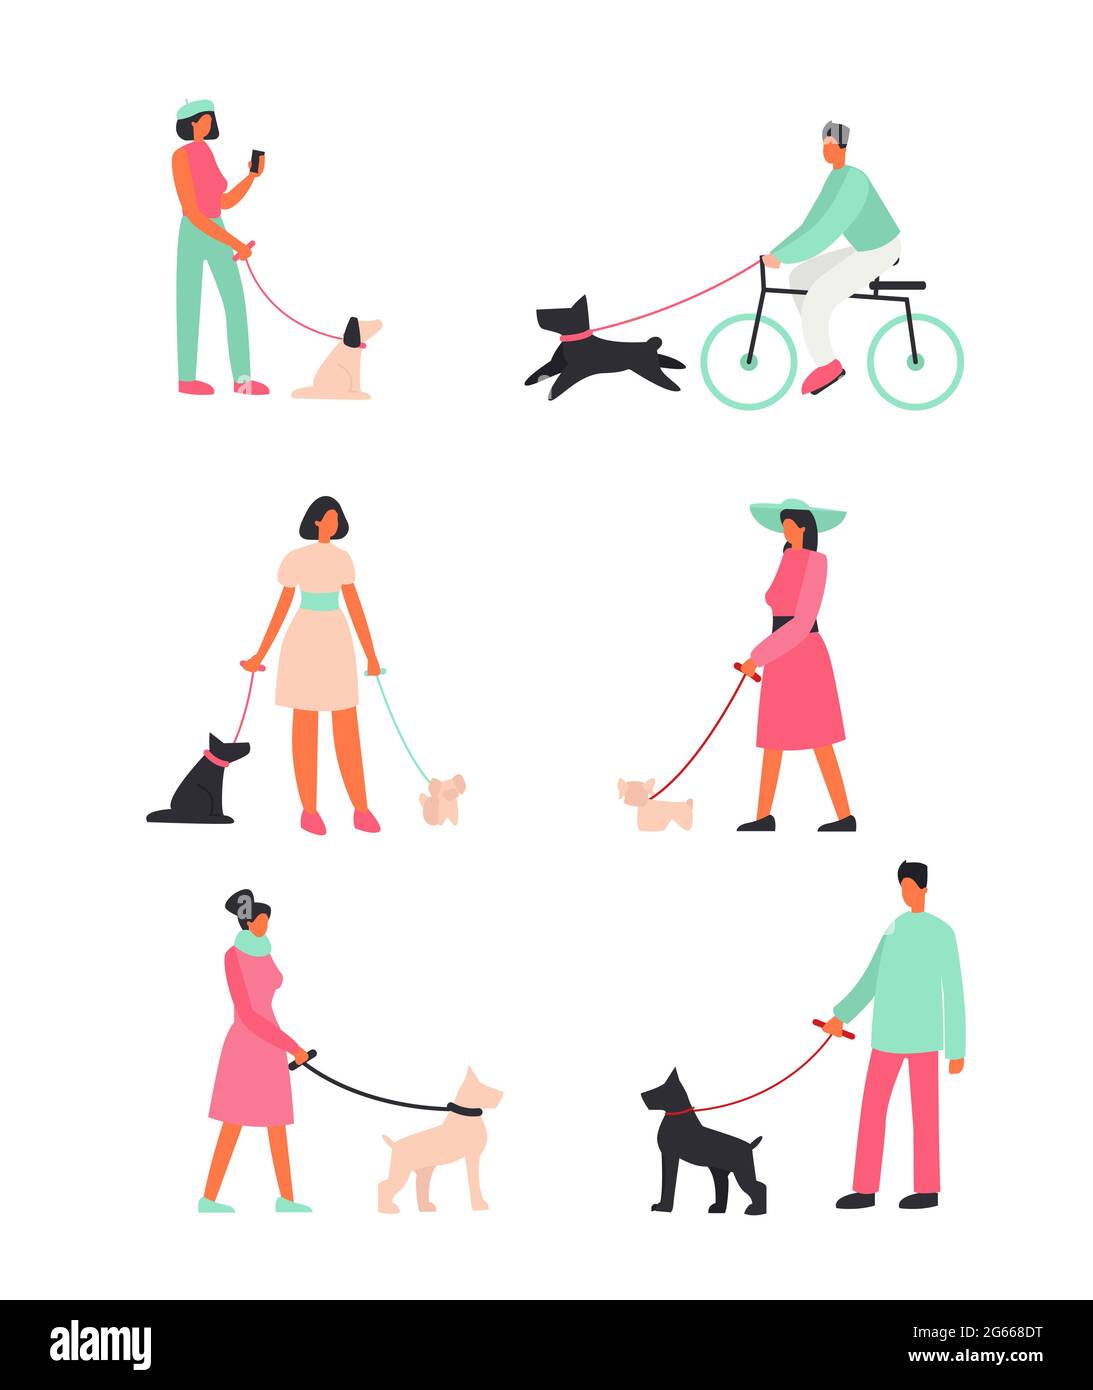 Illustrazione vettoriale persone con cani stare in piedi e camminare all'esterno. Gente felice che cammina con i cani divertenti. Illustrazioni in stile piano cartoon. Illustrazione Vettoriale